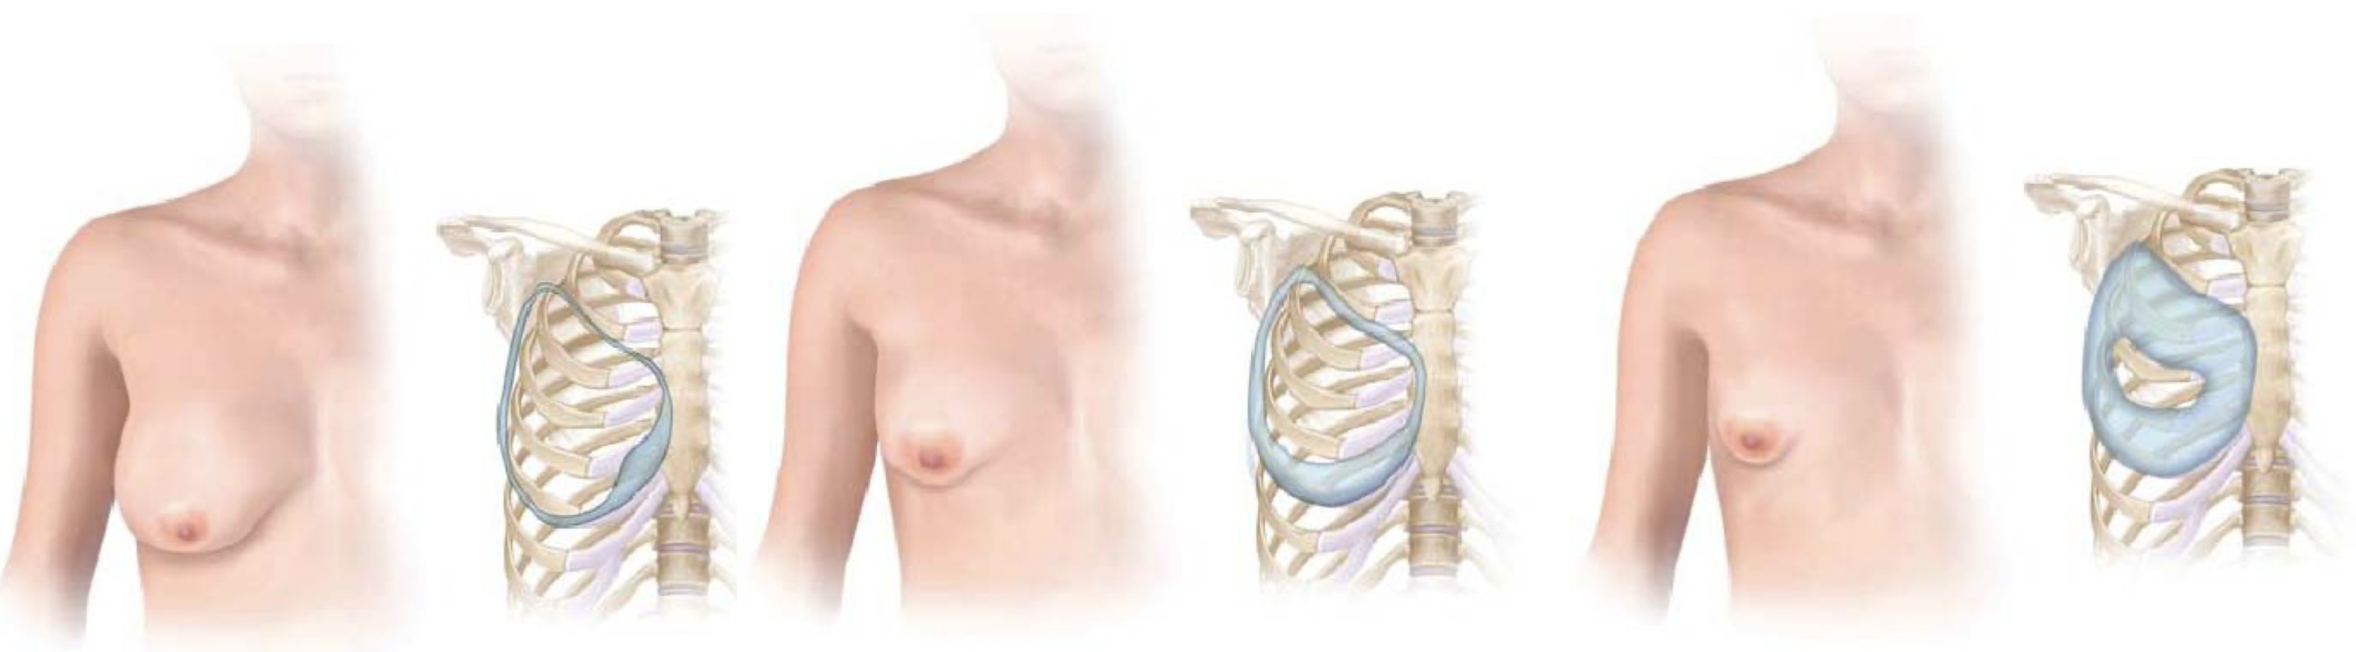 Bij een tubureuze borst belemmert een vernauwende ring de normale borstontwikkeling, waardoor een vernauwde borst ontstaat. Er zijn verschillende graden van tubureuze borsten, afhankelijk van de anatomie van de vernauwende ring.